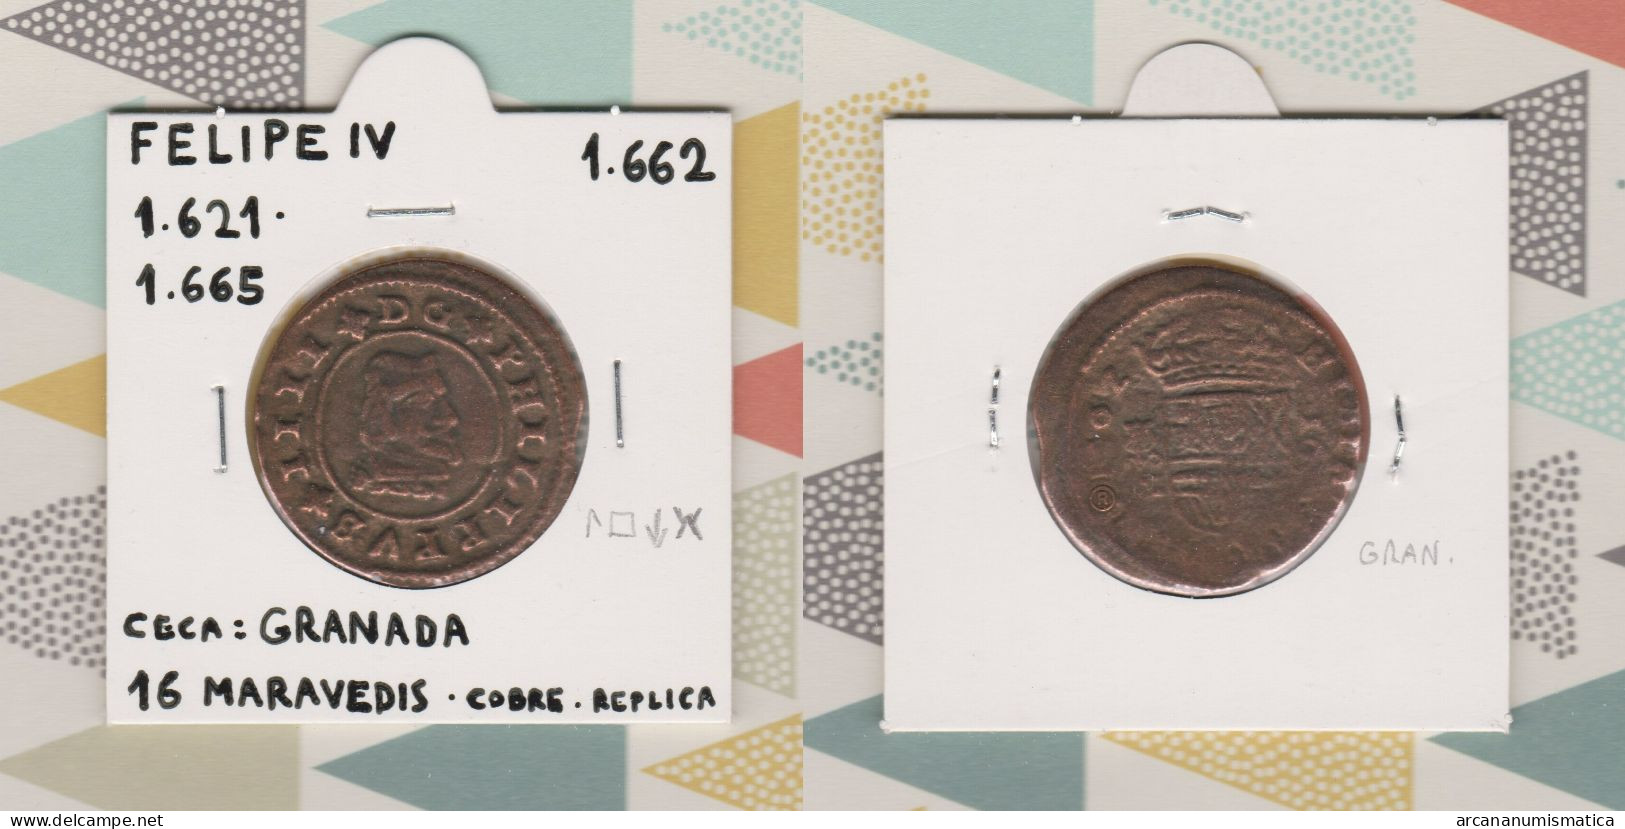 FELIPE IV 1.621-1.665  16 MARAVEDIS - COBRE  Ceca: Granada  Réplica   DL-13.440 - Monedas Falsas